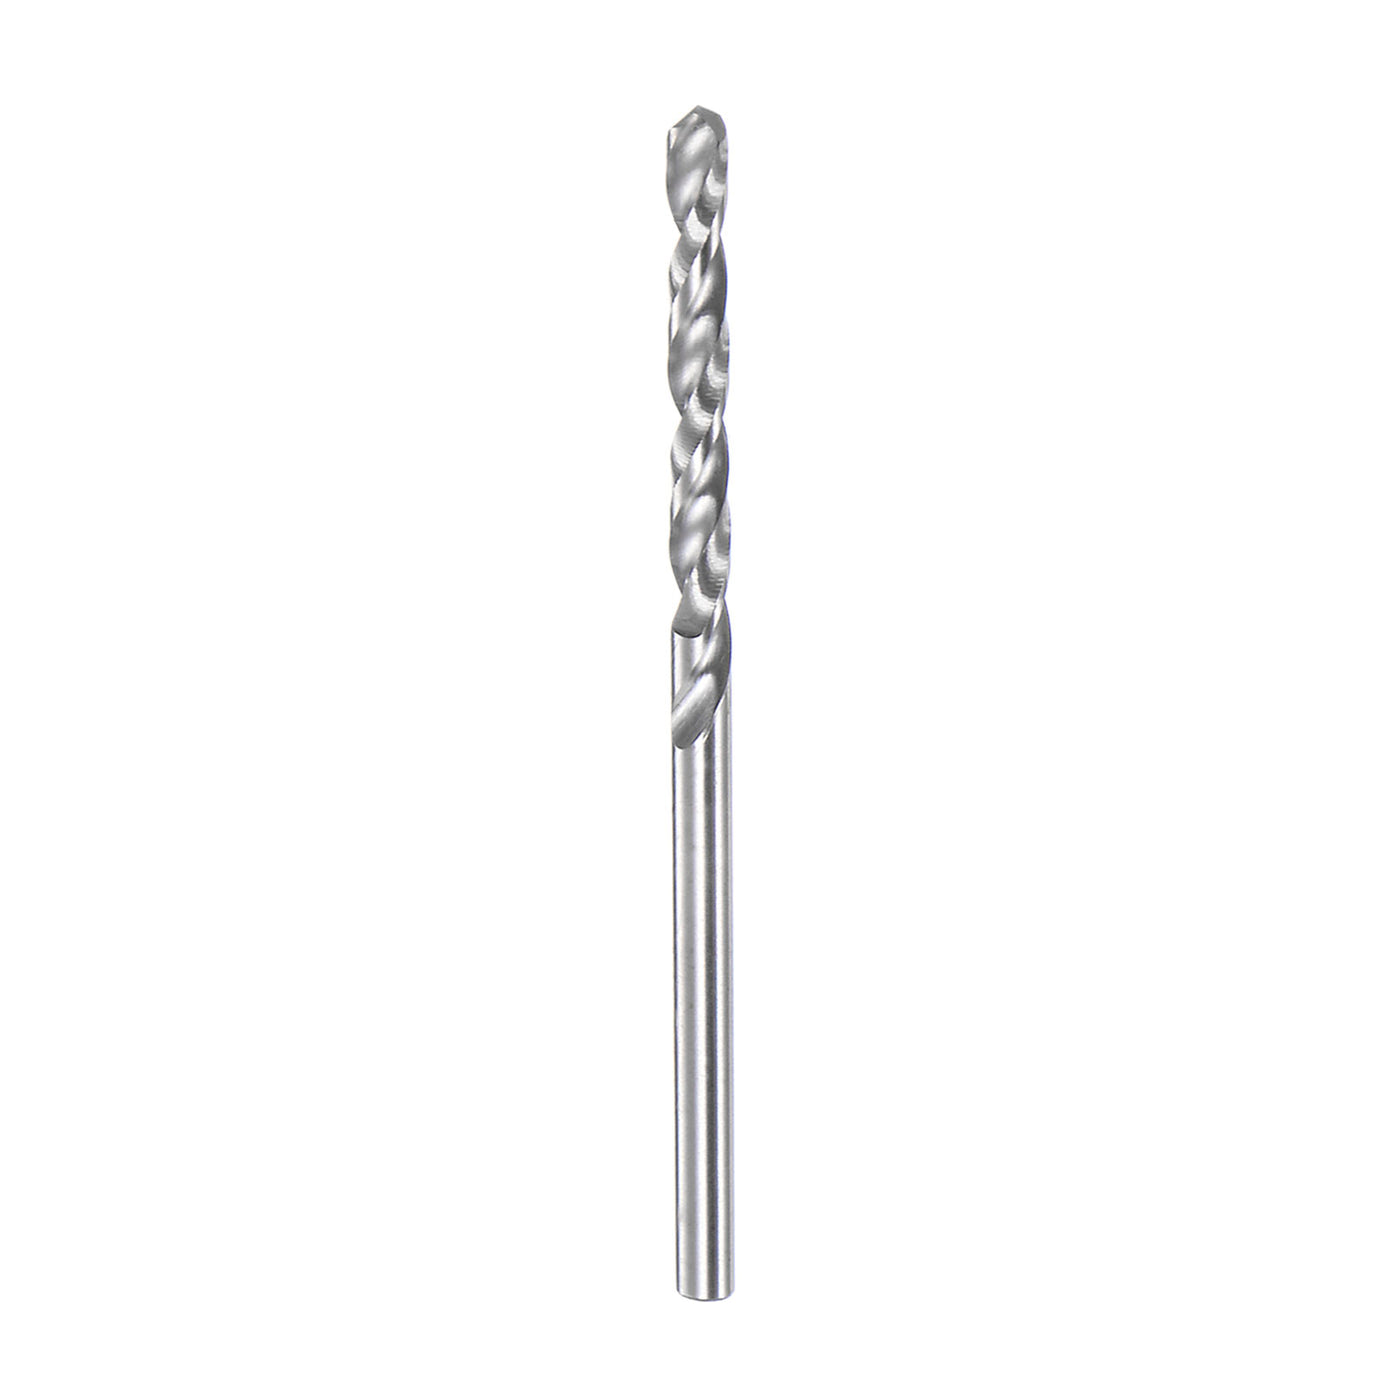 Harfington 1.9mm C3/K10 Tungsten Carbide Precision Straight Shank Twist Drill Bit